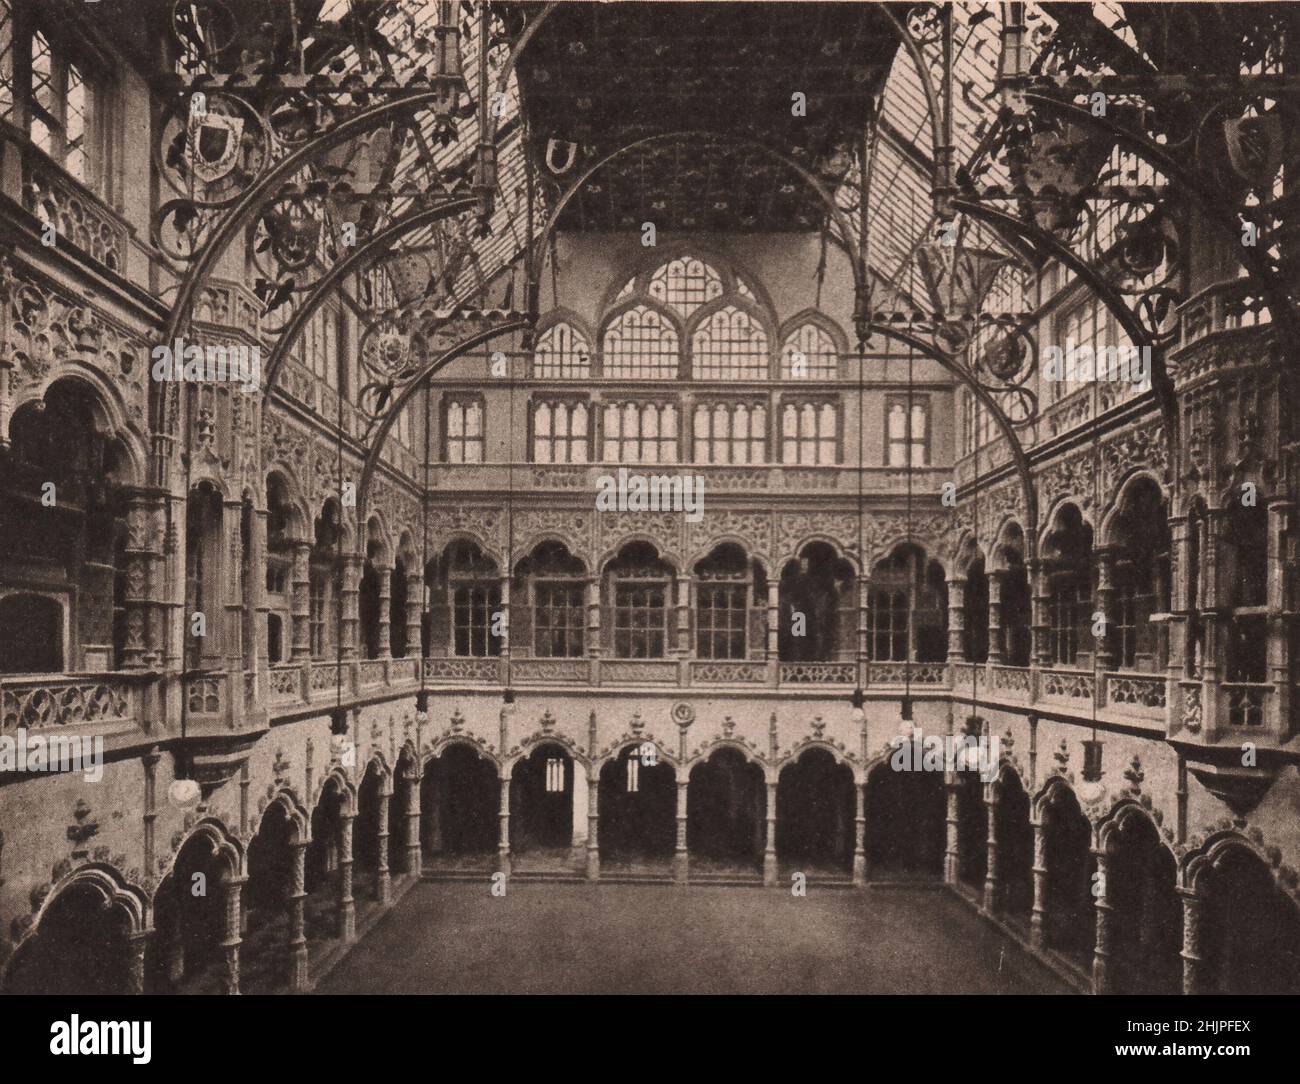 Reconstruit sur les lignes de l'échange original, brûlé en 1858, le nouveau bourse d'Anvers dans un imposant édifice de design élégant. Belgique (1923) Banque D'Images